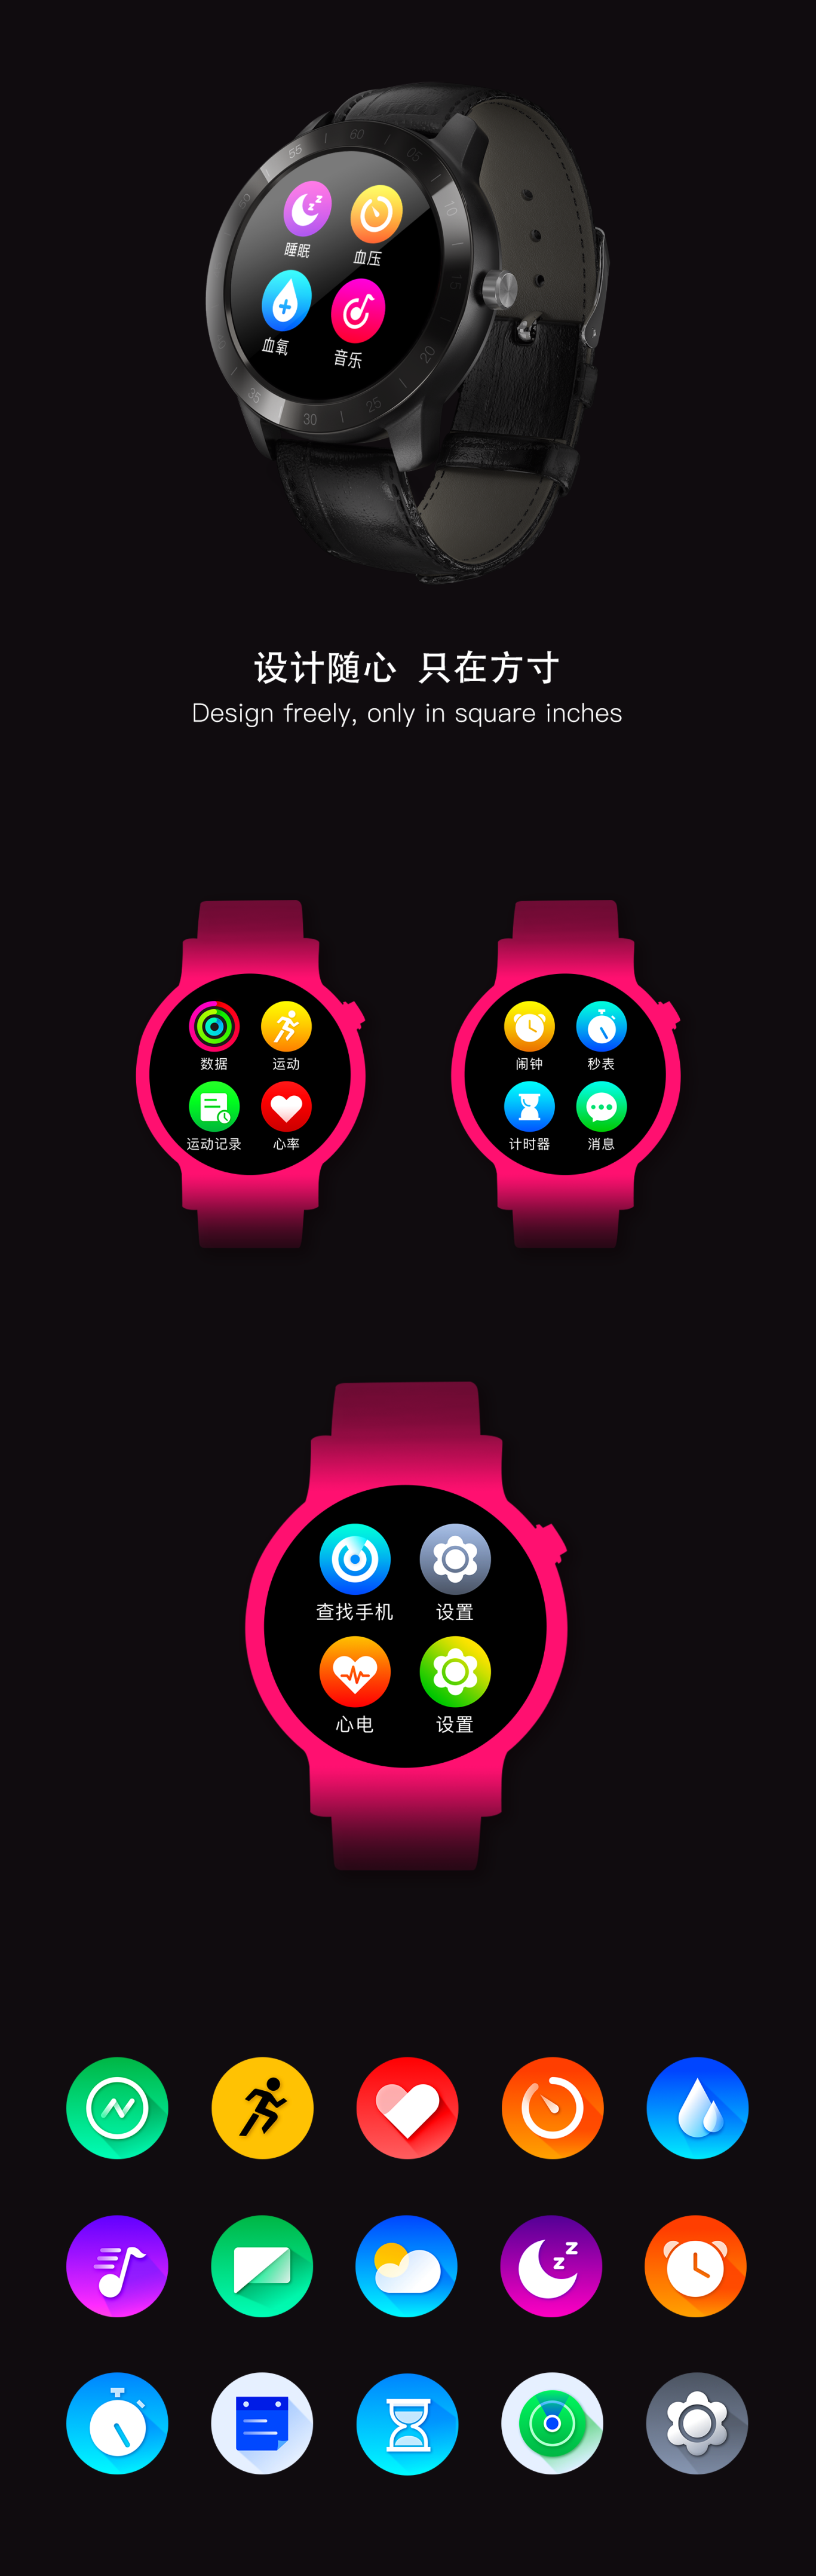 智能手表icon圖1